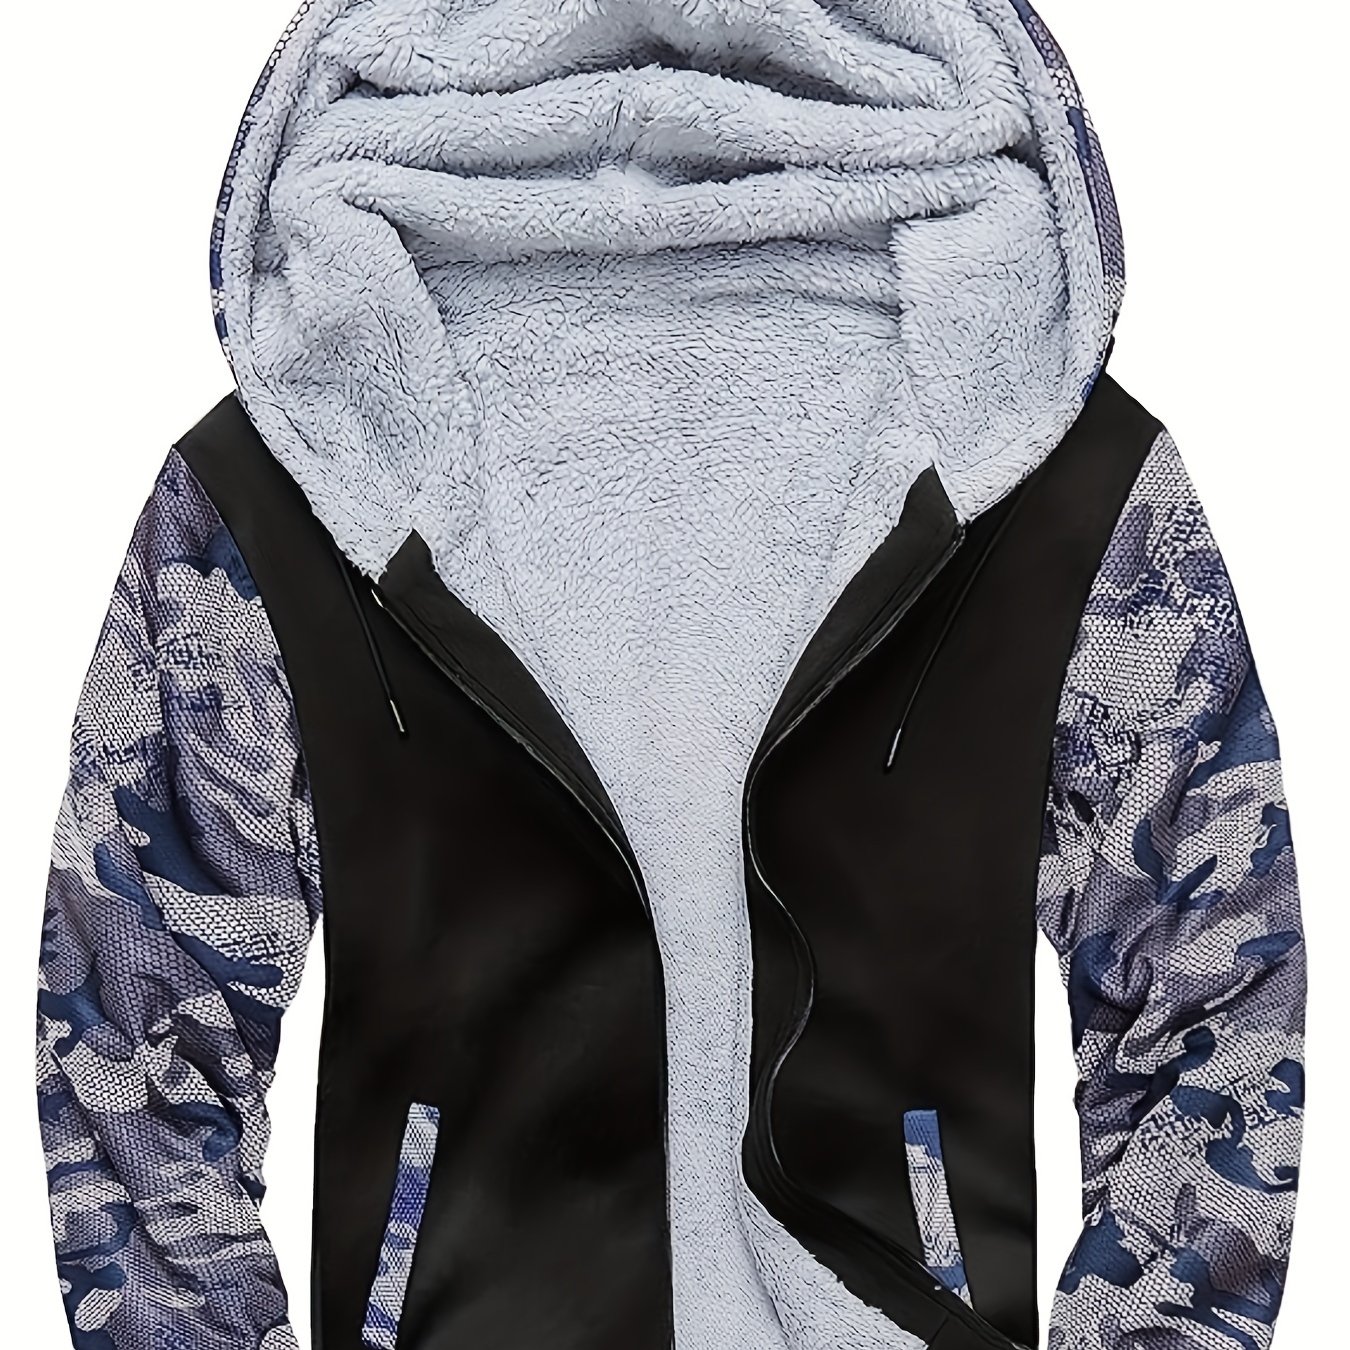 AMDBEL Thermal Hoodies for Men Zip Up, Winter Jackets for Men